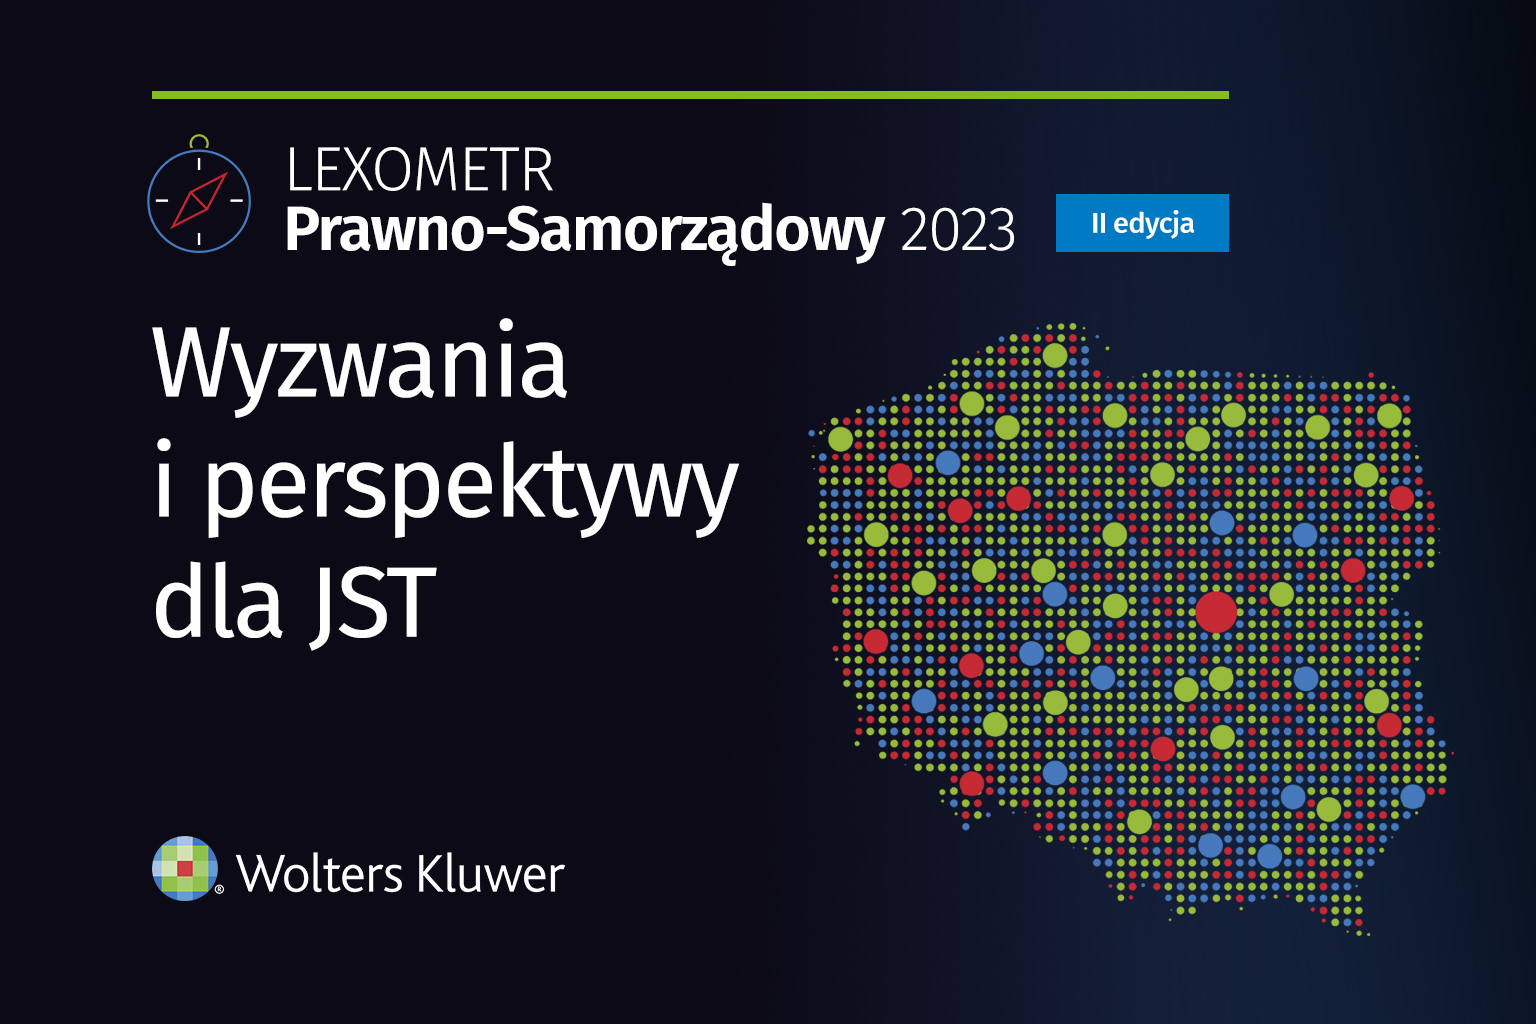 "LEXOMETR Prawno-Samorządowy 2023 - wyzwania i perspektywy dla JST" - ogólnopolskie badanie